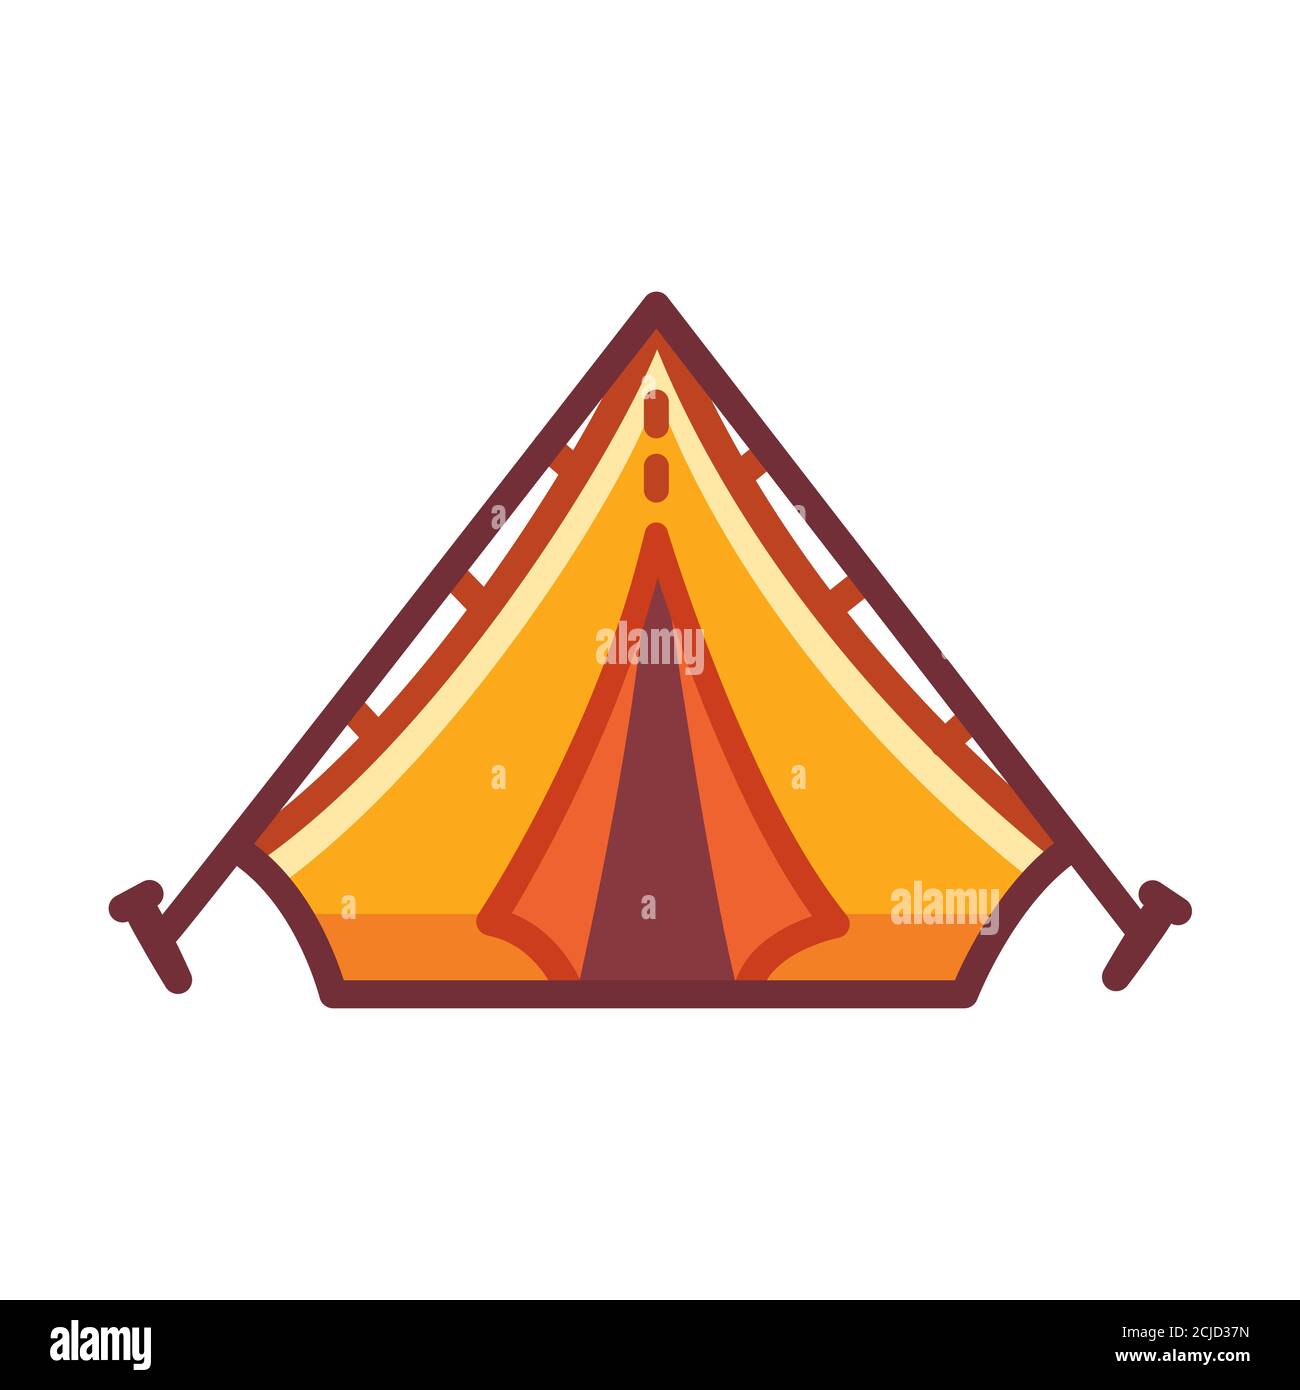 Icona della tenda da campeggio Cartoon. Disegno del campo di impostazione giallo. Illustrazione della clip art vettoriale isolata. Illustrazione Vettoriale